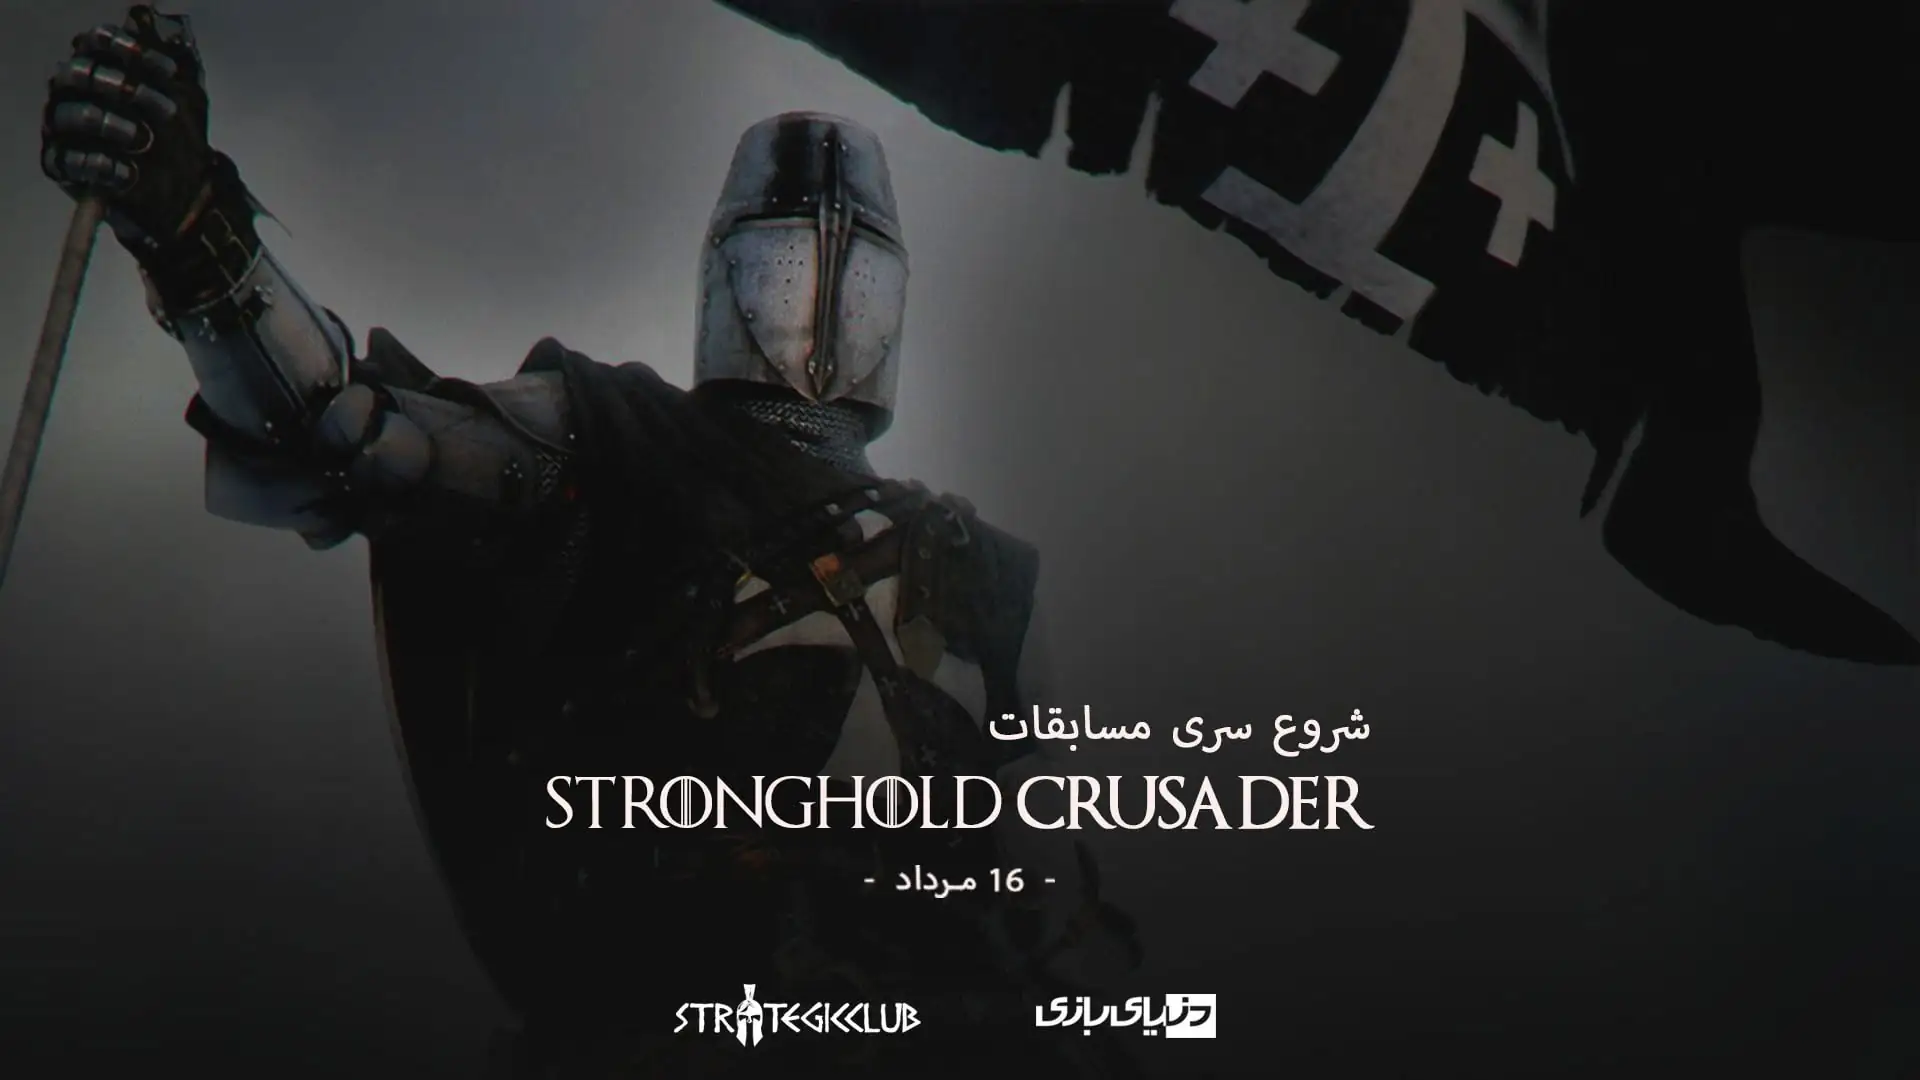 استراتژیک کلاب با کمک دنیای بازی تورنمنت بازی Stronghold Crusader را برگزار خواهند کرد!